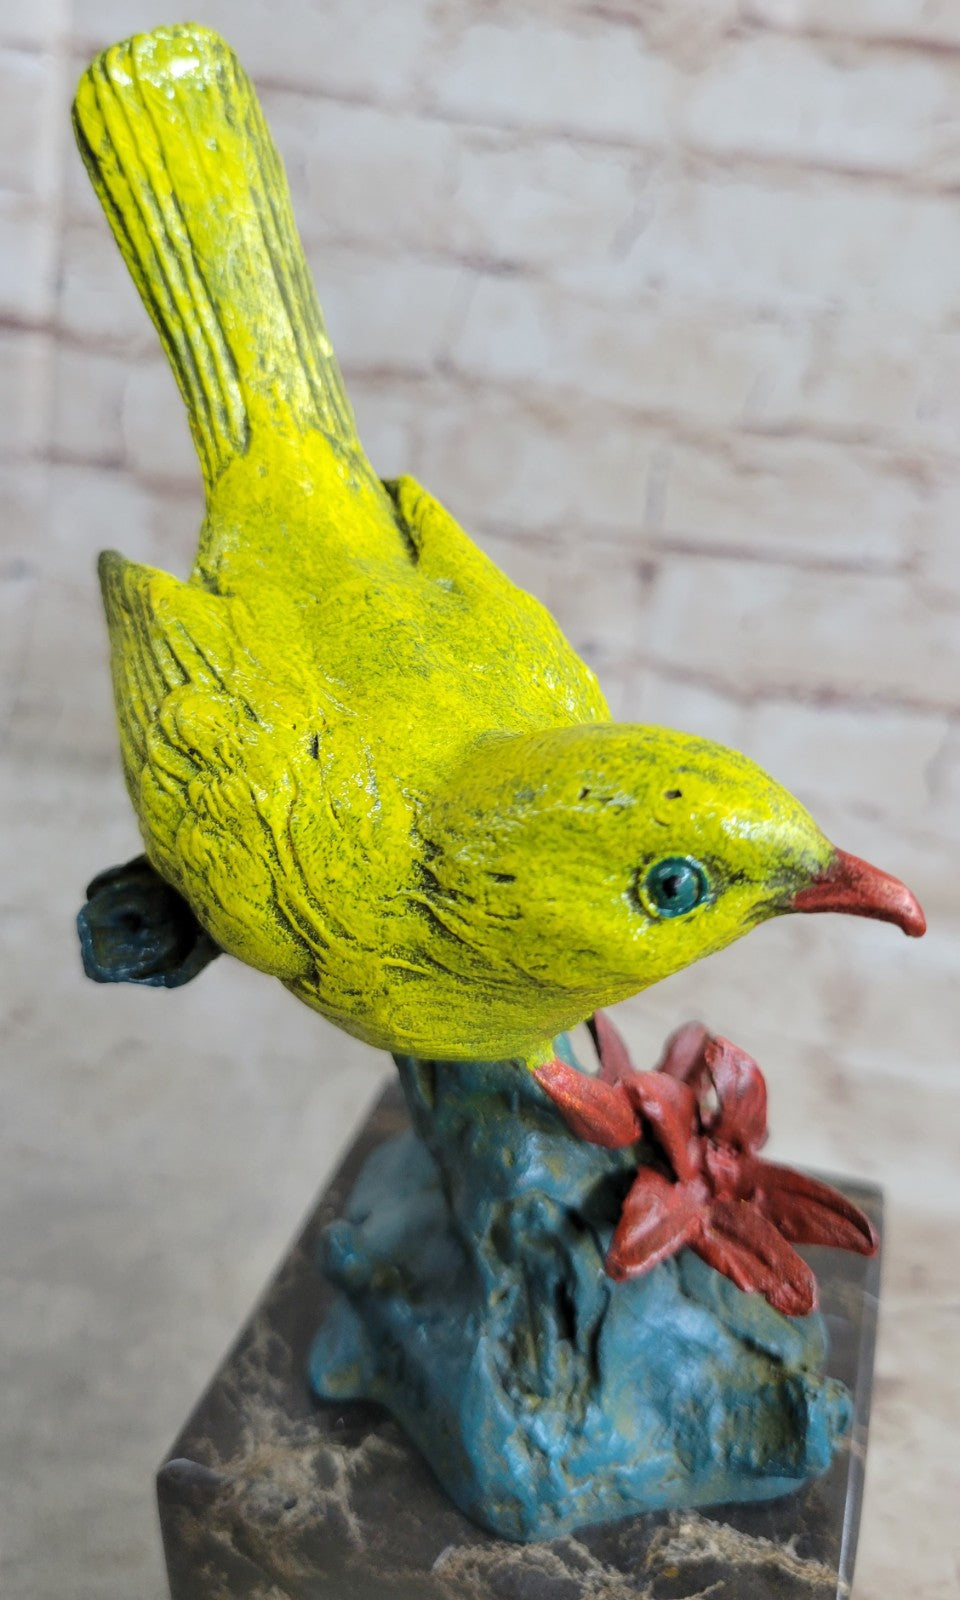 Vienna Bronze Finch Bird Good Quality Bronze Artwork Sculpture Statue Figure Art